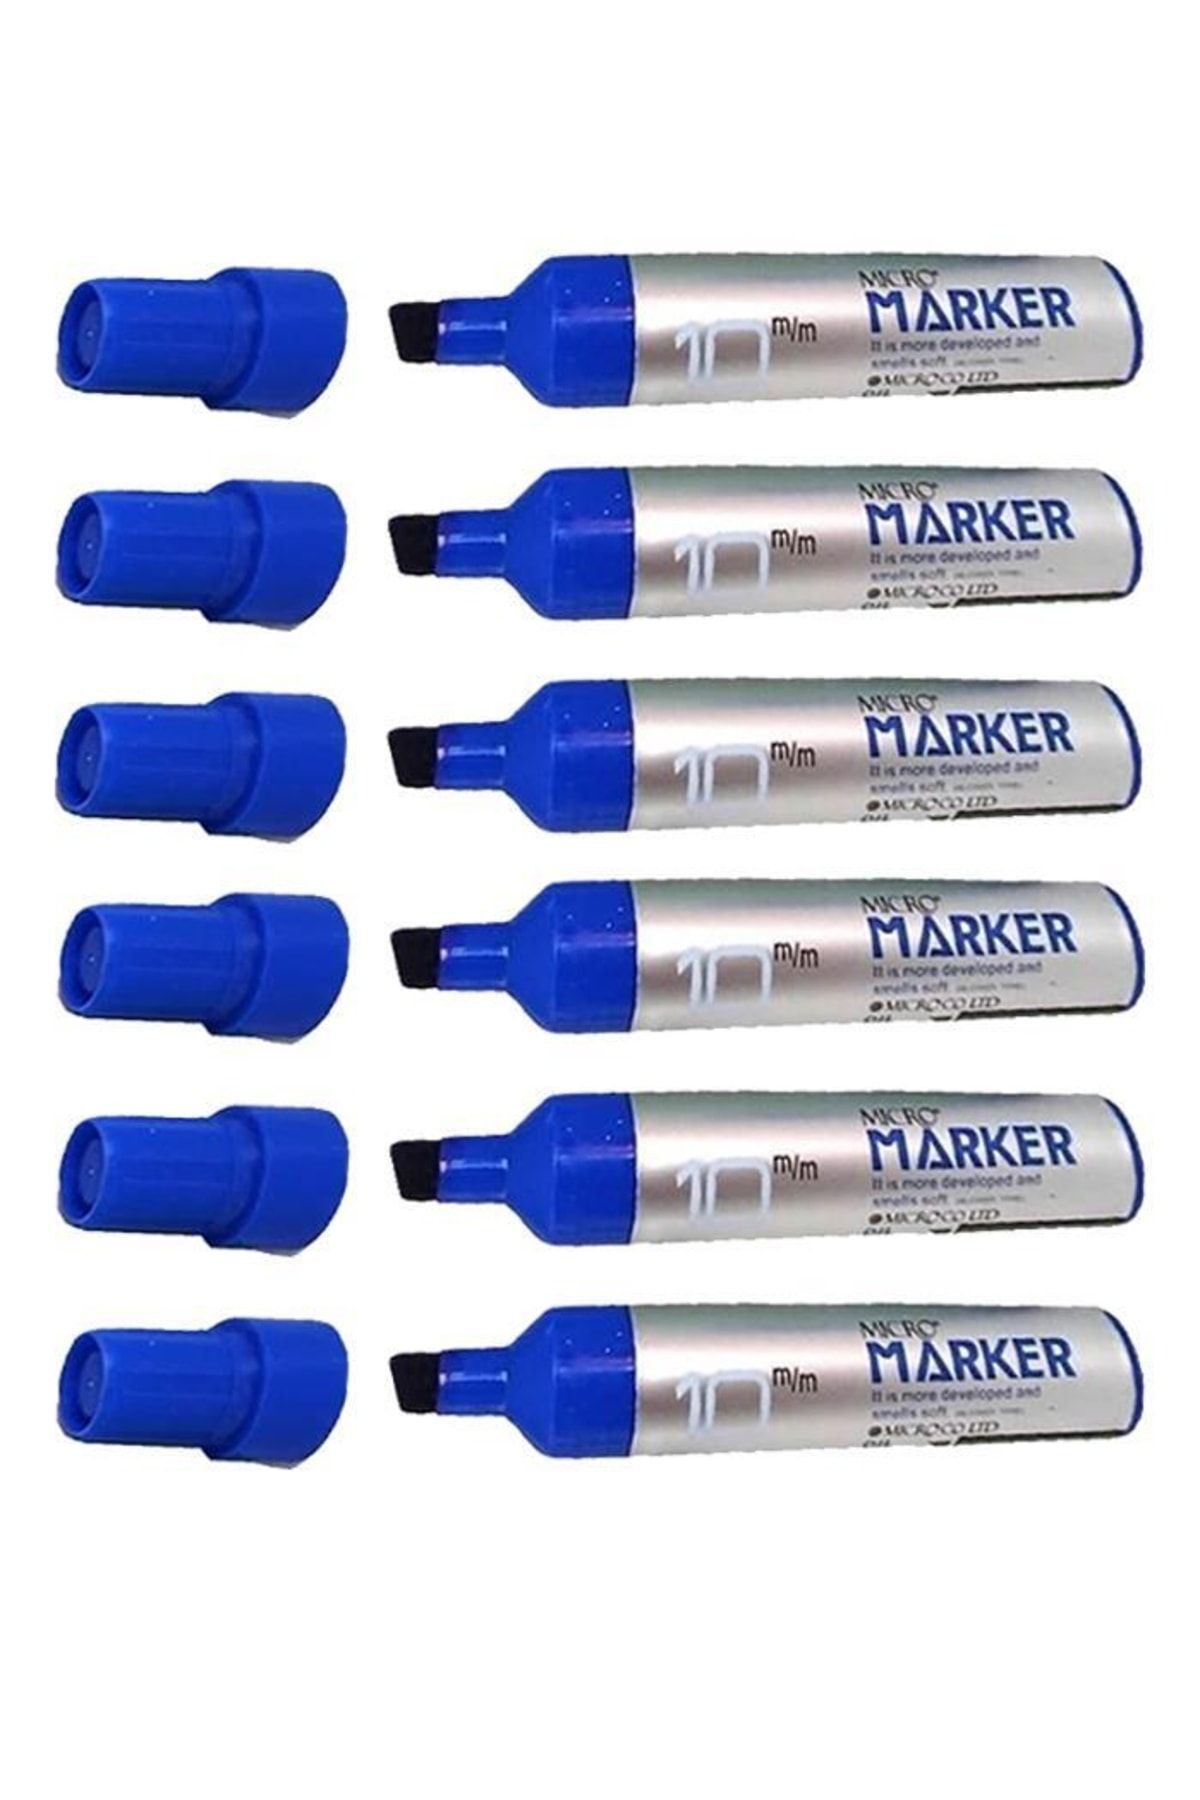 Micro Permanent Markör Marker Kesik Uçlu Koli Kalemi Mavi 10 Mm Çuval Kalemi Silinmez 6 Adet 1 Paket